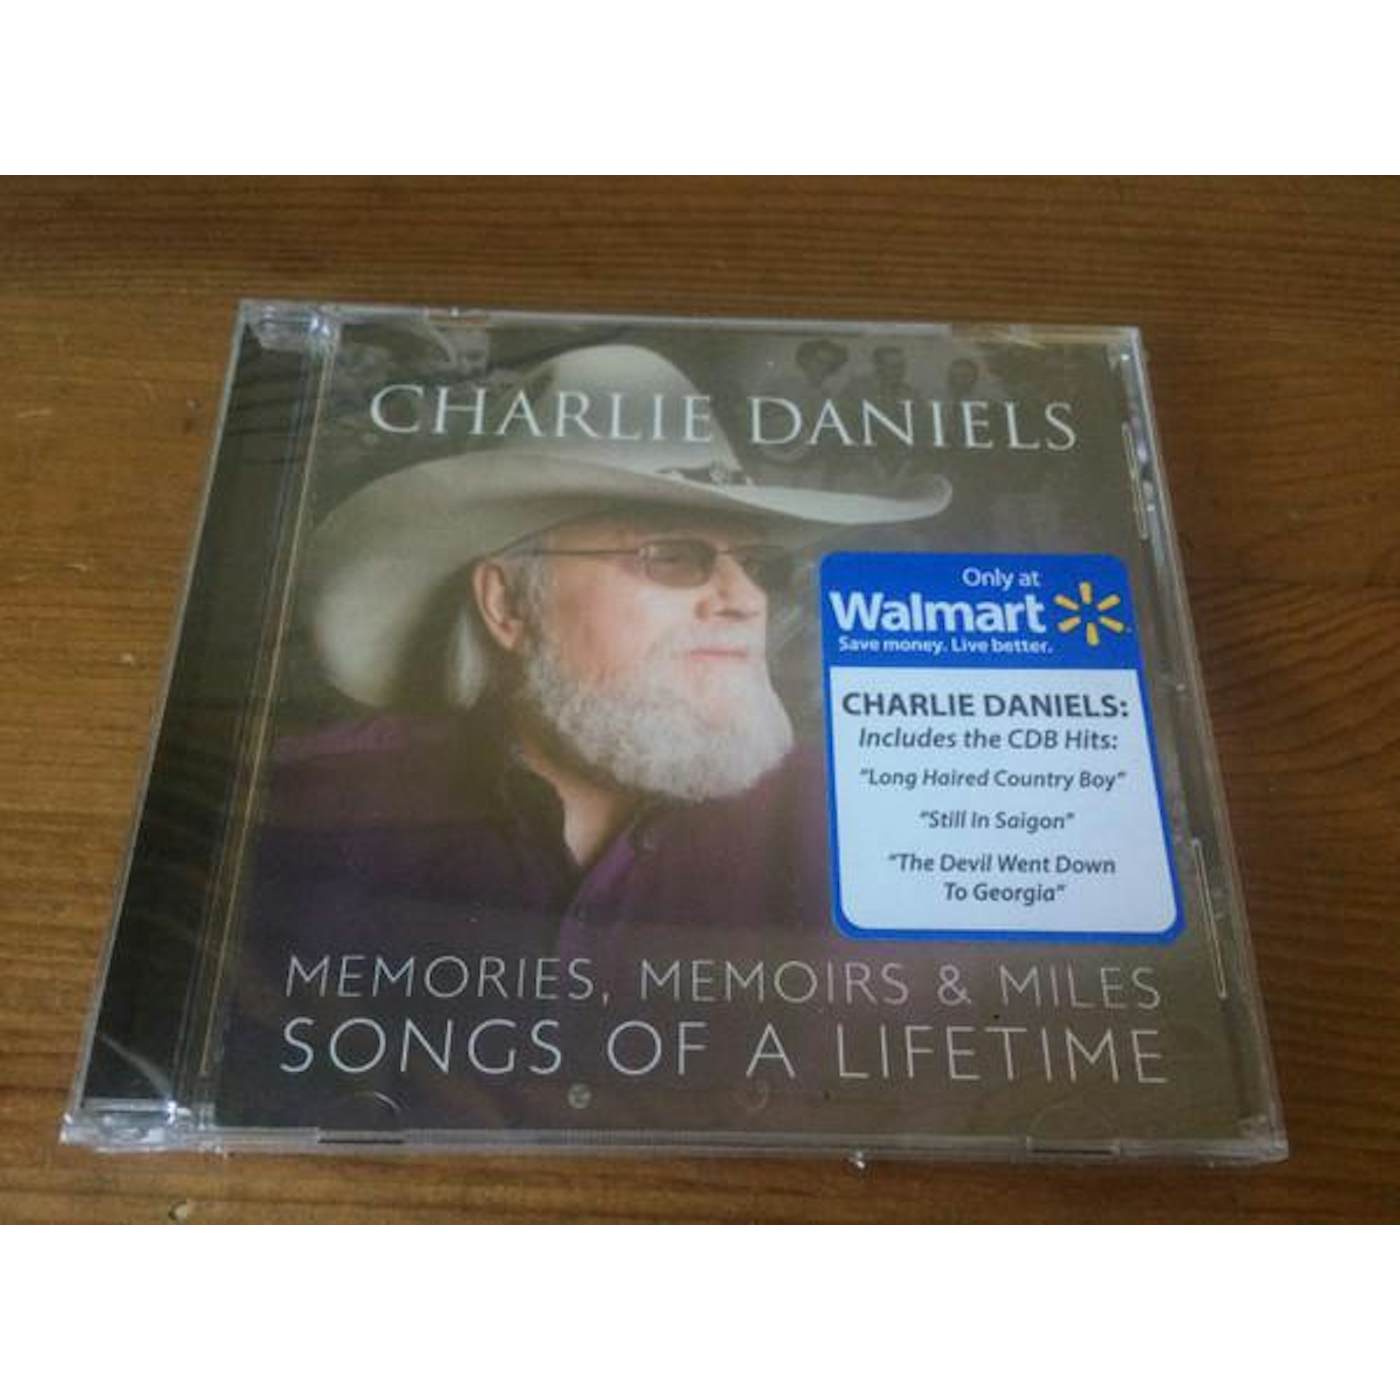 Charlie Daniels MEMORIES, MEMOIRS & MILES: SONGS OF A LIFETIME CD